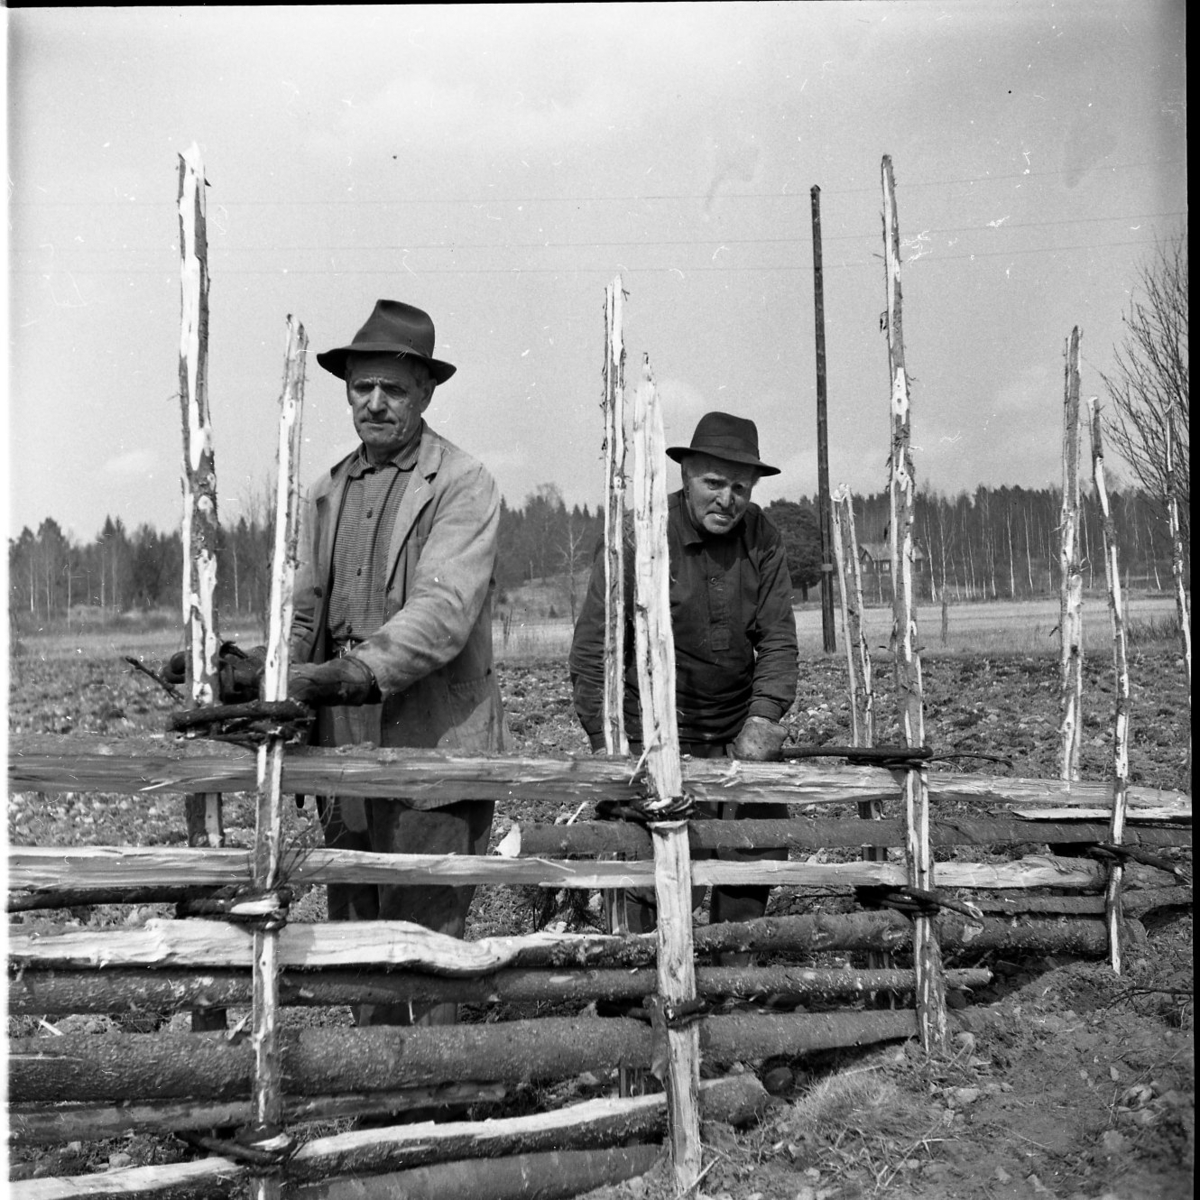 Två män bygger en gärdsgård. De binder ihop störarna med vindjor samtidigt som de tittar in i kameran.